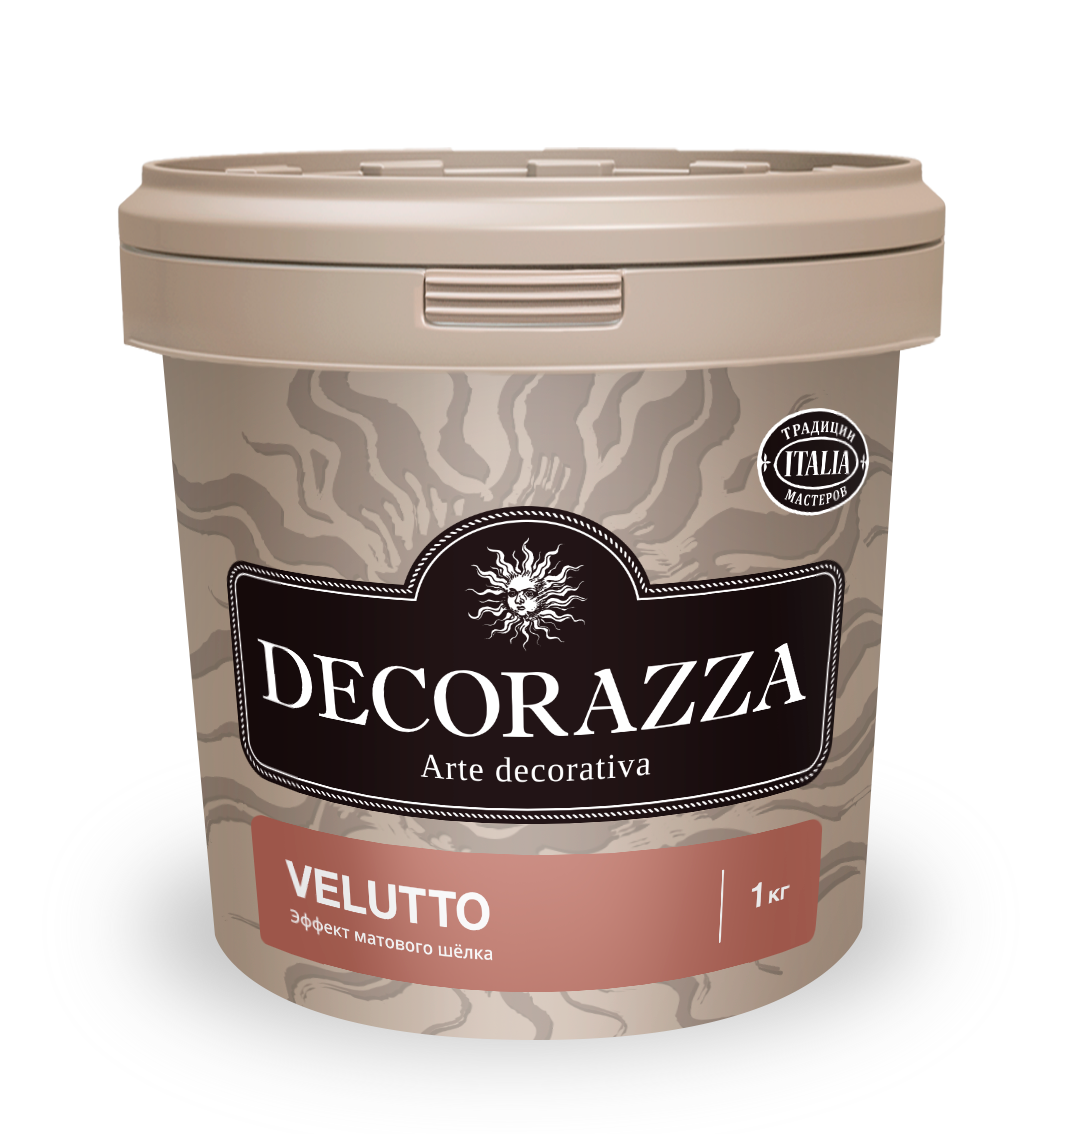 Декоративная штукатурка Decorazza Velluto VT 001, 1 кг декоративная штукатурка decorazza velluto vt 001 5 кг